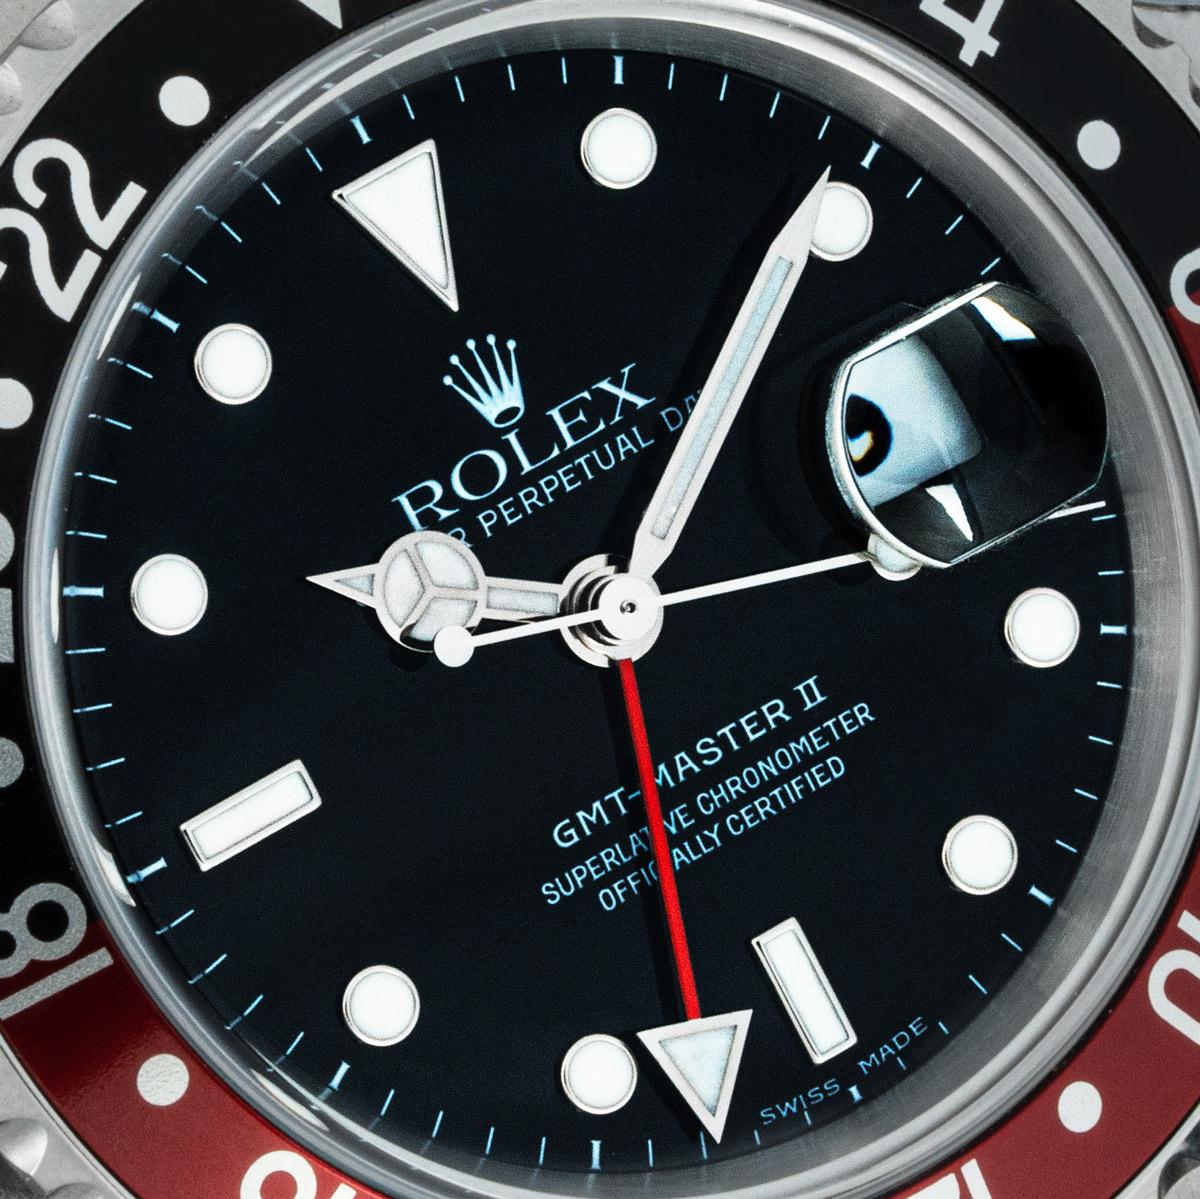 Un GMT-Master II en acier inoxydable NOS de Rolex. Cadran noir avec date et aiguille rouge pour le second fuseau horaire. La lunette rotative bidirectionnelle présente un affichage 24 heures et un insert 